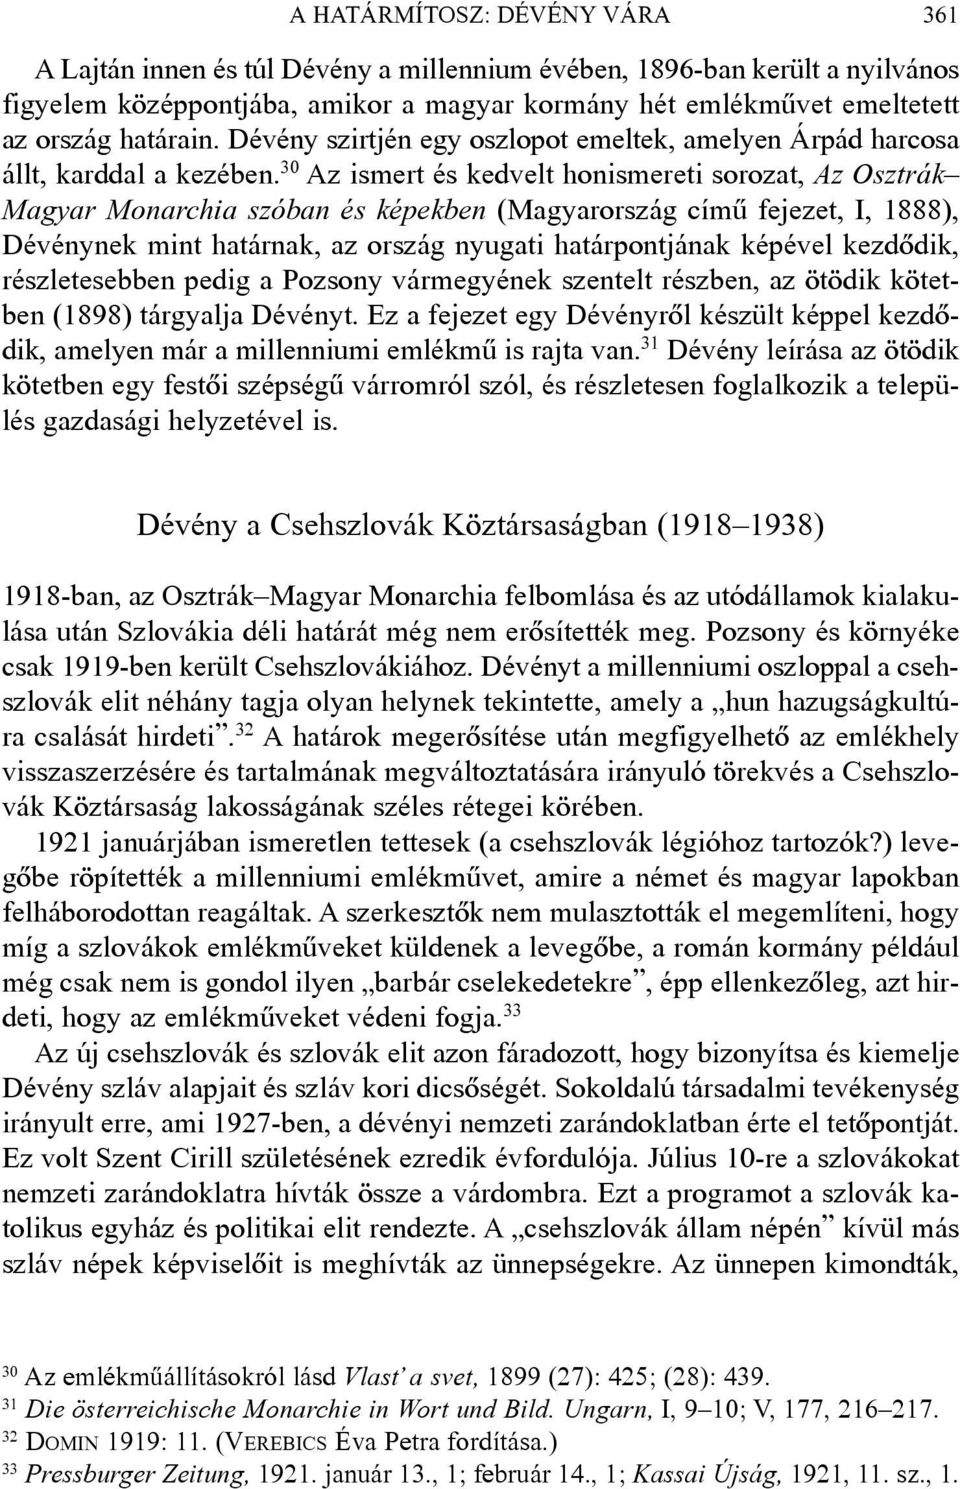 30 Az ismert és kedvelt honismereti sorozat, Az Osztrák Magyar Monarchia szóban és képekben (Magyarország címû fejezet, I, 1888), Dévénynek mint határnak, az ország nyugati határpontjának képével